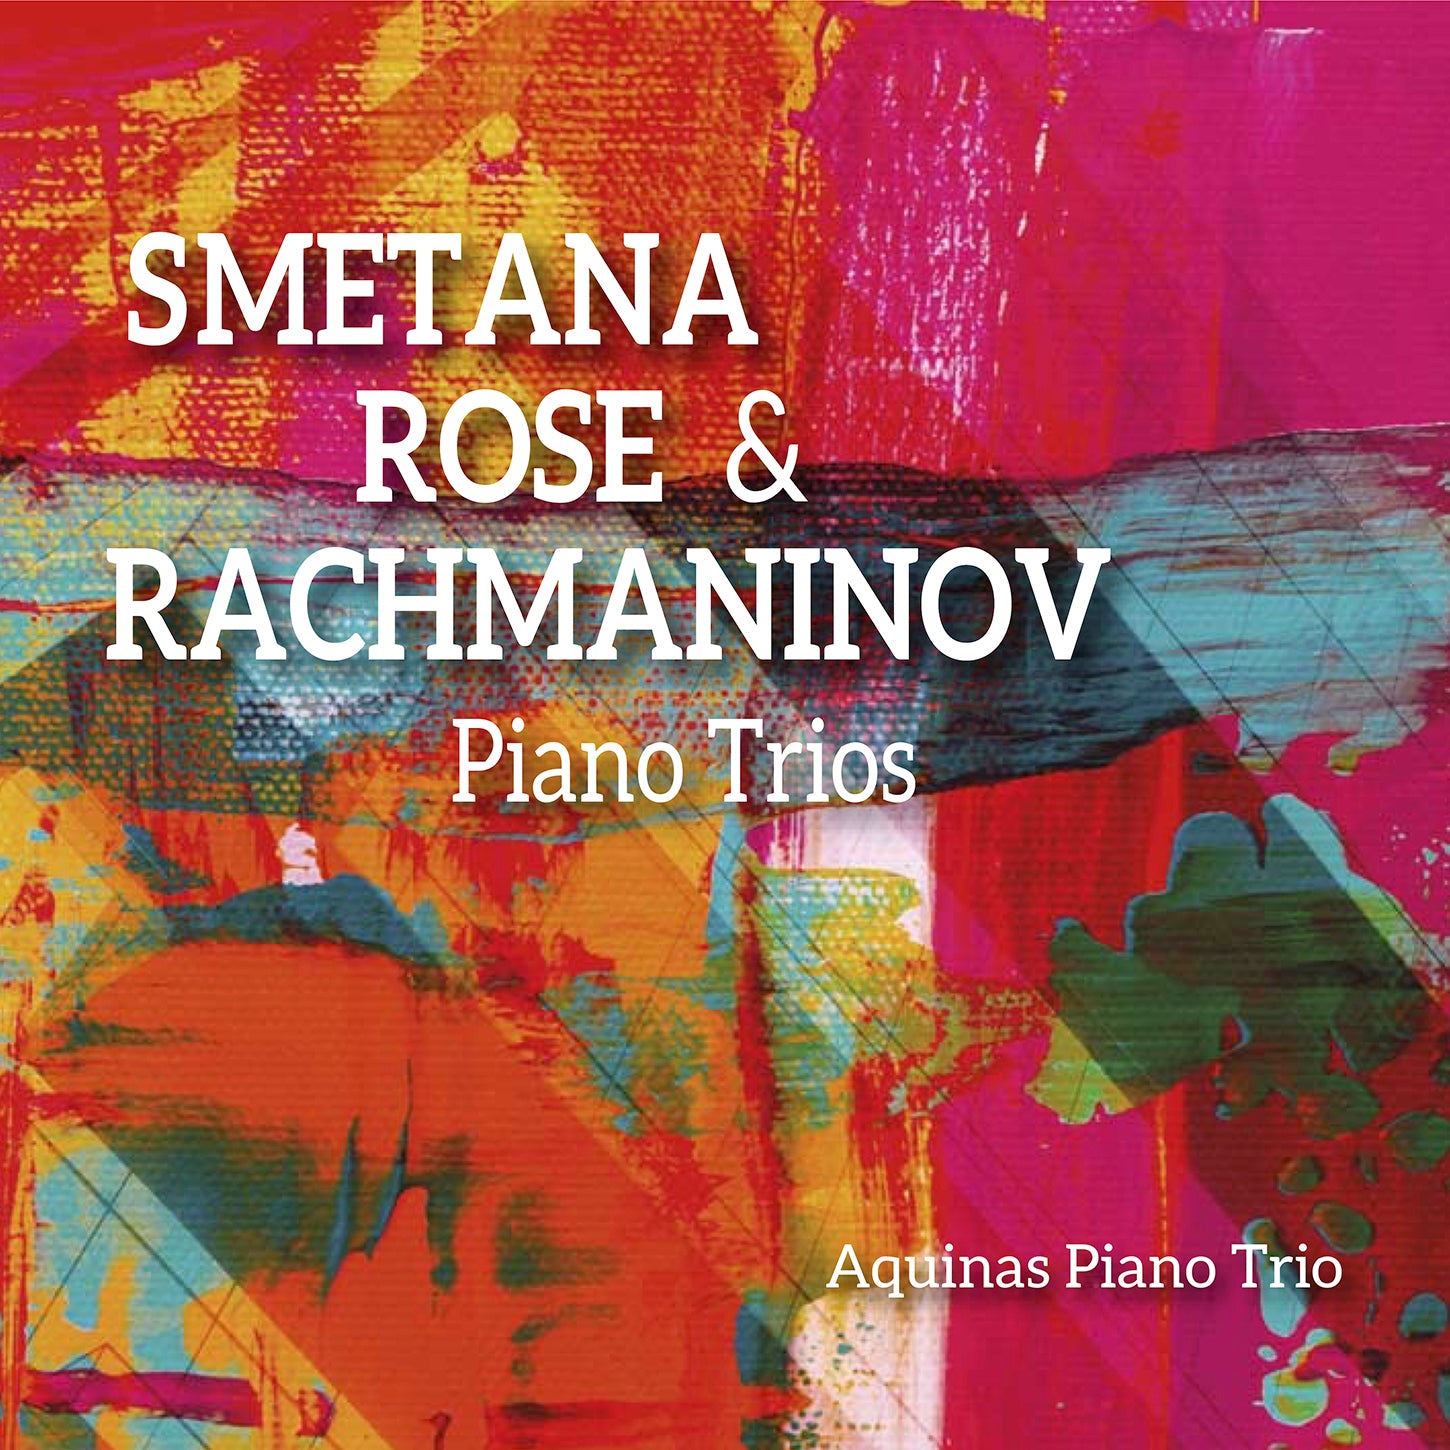 Smetana, Rose & Rachmaninoff: Piano Trios / Aquinas Piano Trio